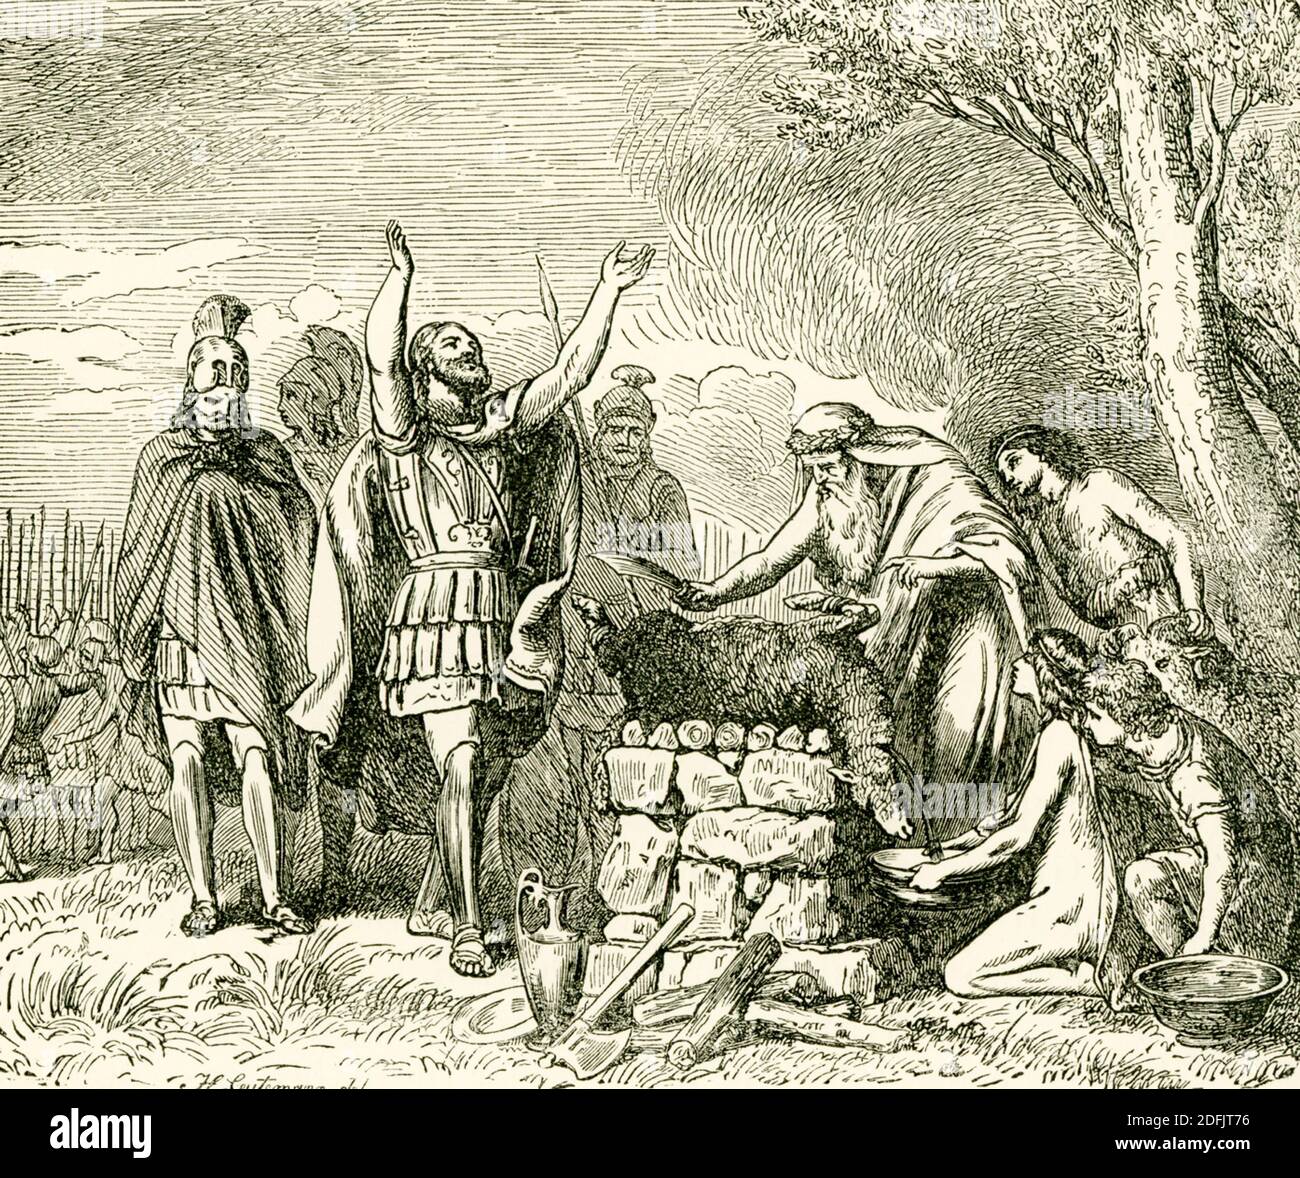 Combattu en 479 av. J.-C. entre les Grecs et les Perses, Plataea était la dernière bataille terrestre de la guerre perse menée par Xerxès (la première guerre perse avait été menée par le père de Xerxès Darius I). Les Perses avaient été chassés de la Grèce continentale après leur défaite à Salamis. Le général Spartan Pausanias a commandé les troupes grecques alliées. Dans cette illustration datant de la fin des années 1800, Pausanias sacrifie aux dieux avant la bataille de Plataea. Banque D'Images